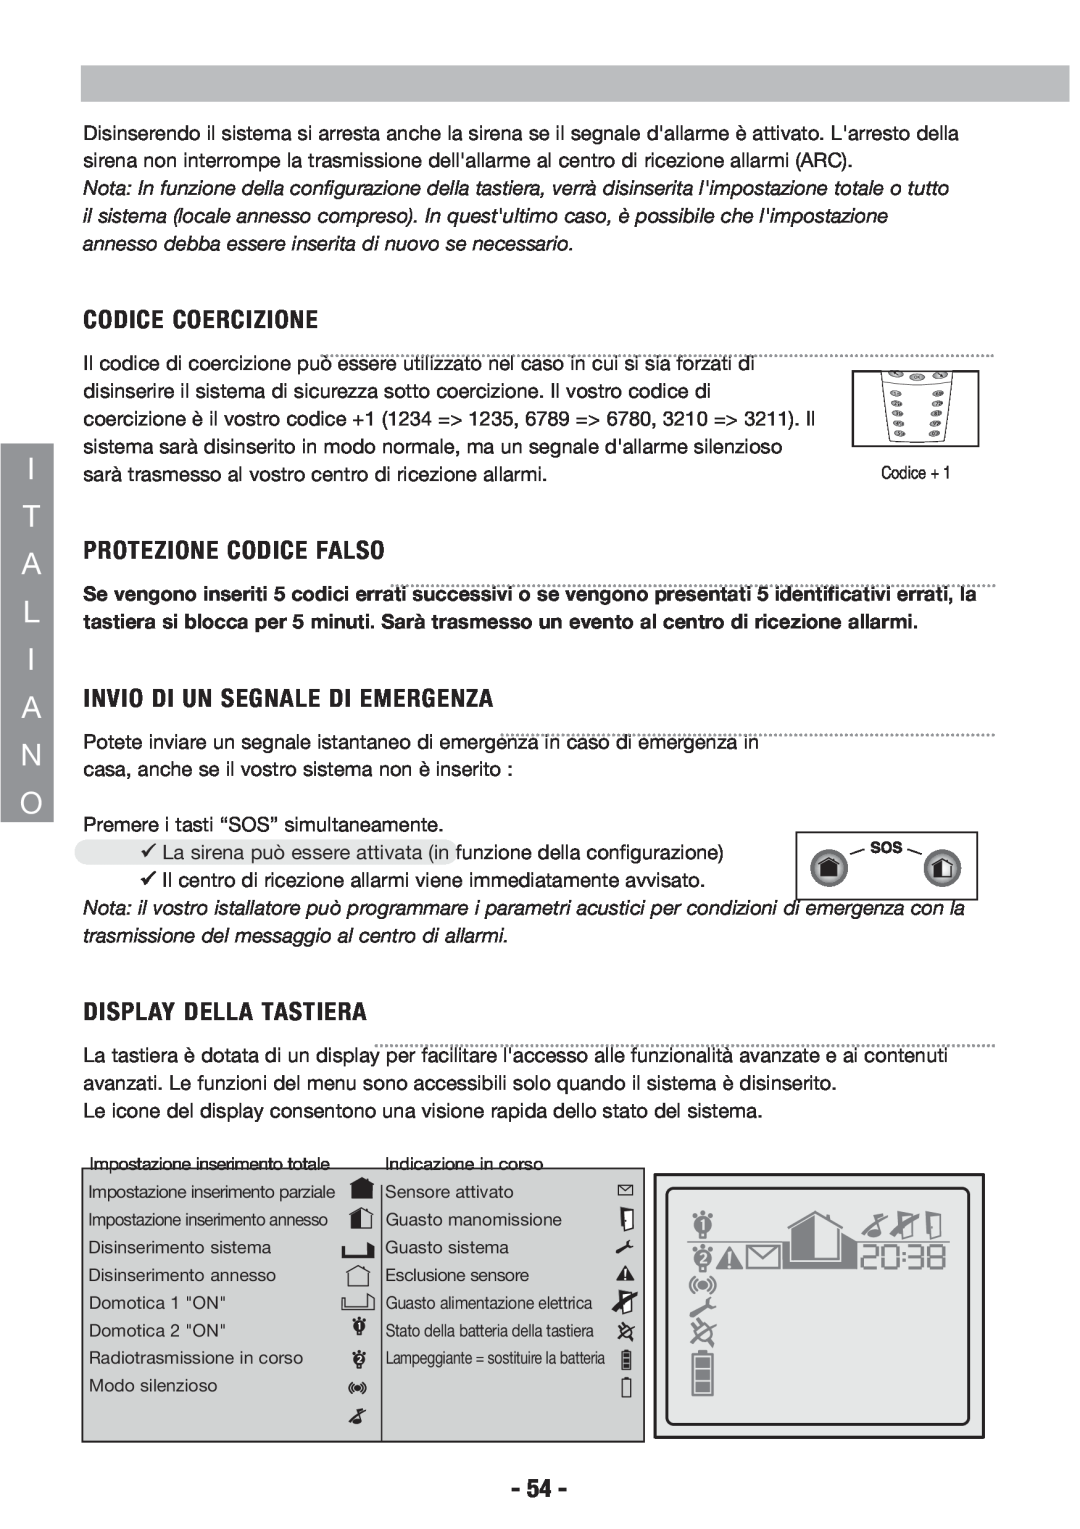 Honeywell EKZ008200B user manual Codice Coercizione, Aprotezione Codice Falso, Ainvio Di Un Segnale Di Emergenza 